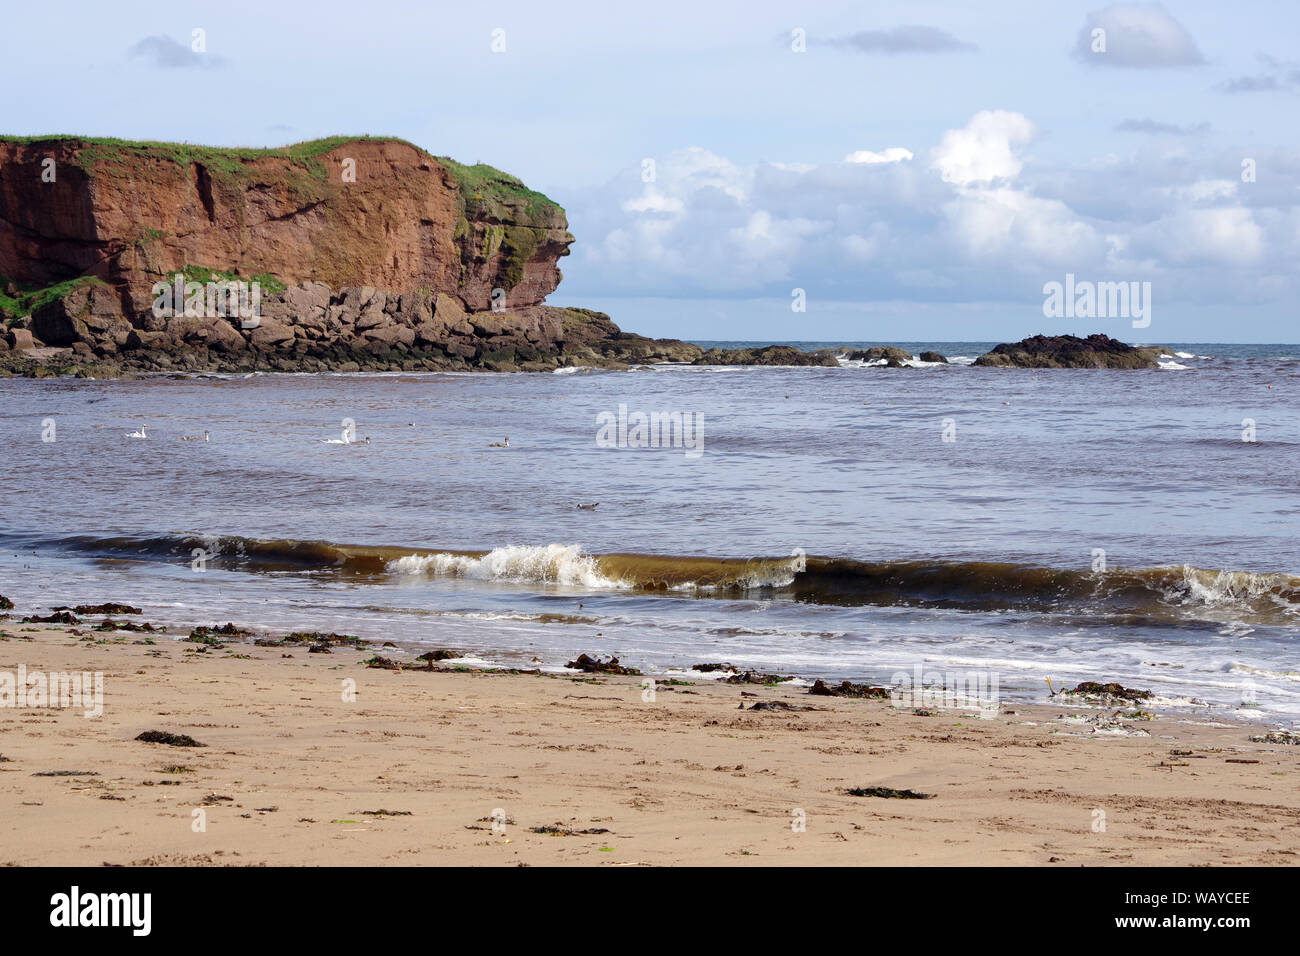 Das Meer in der Kommenden und bei Eyemouth Strand, einer kleinen Gemeinde im Berwickshire, im Bezirk Scottish Borders von Schottland. Stockfoto